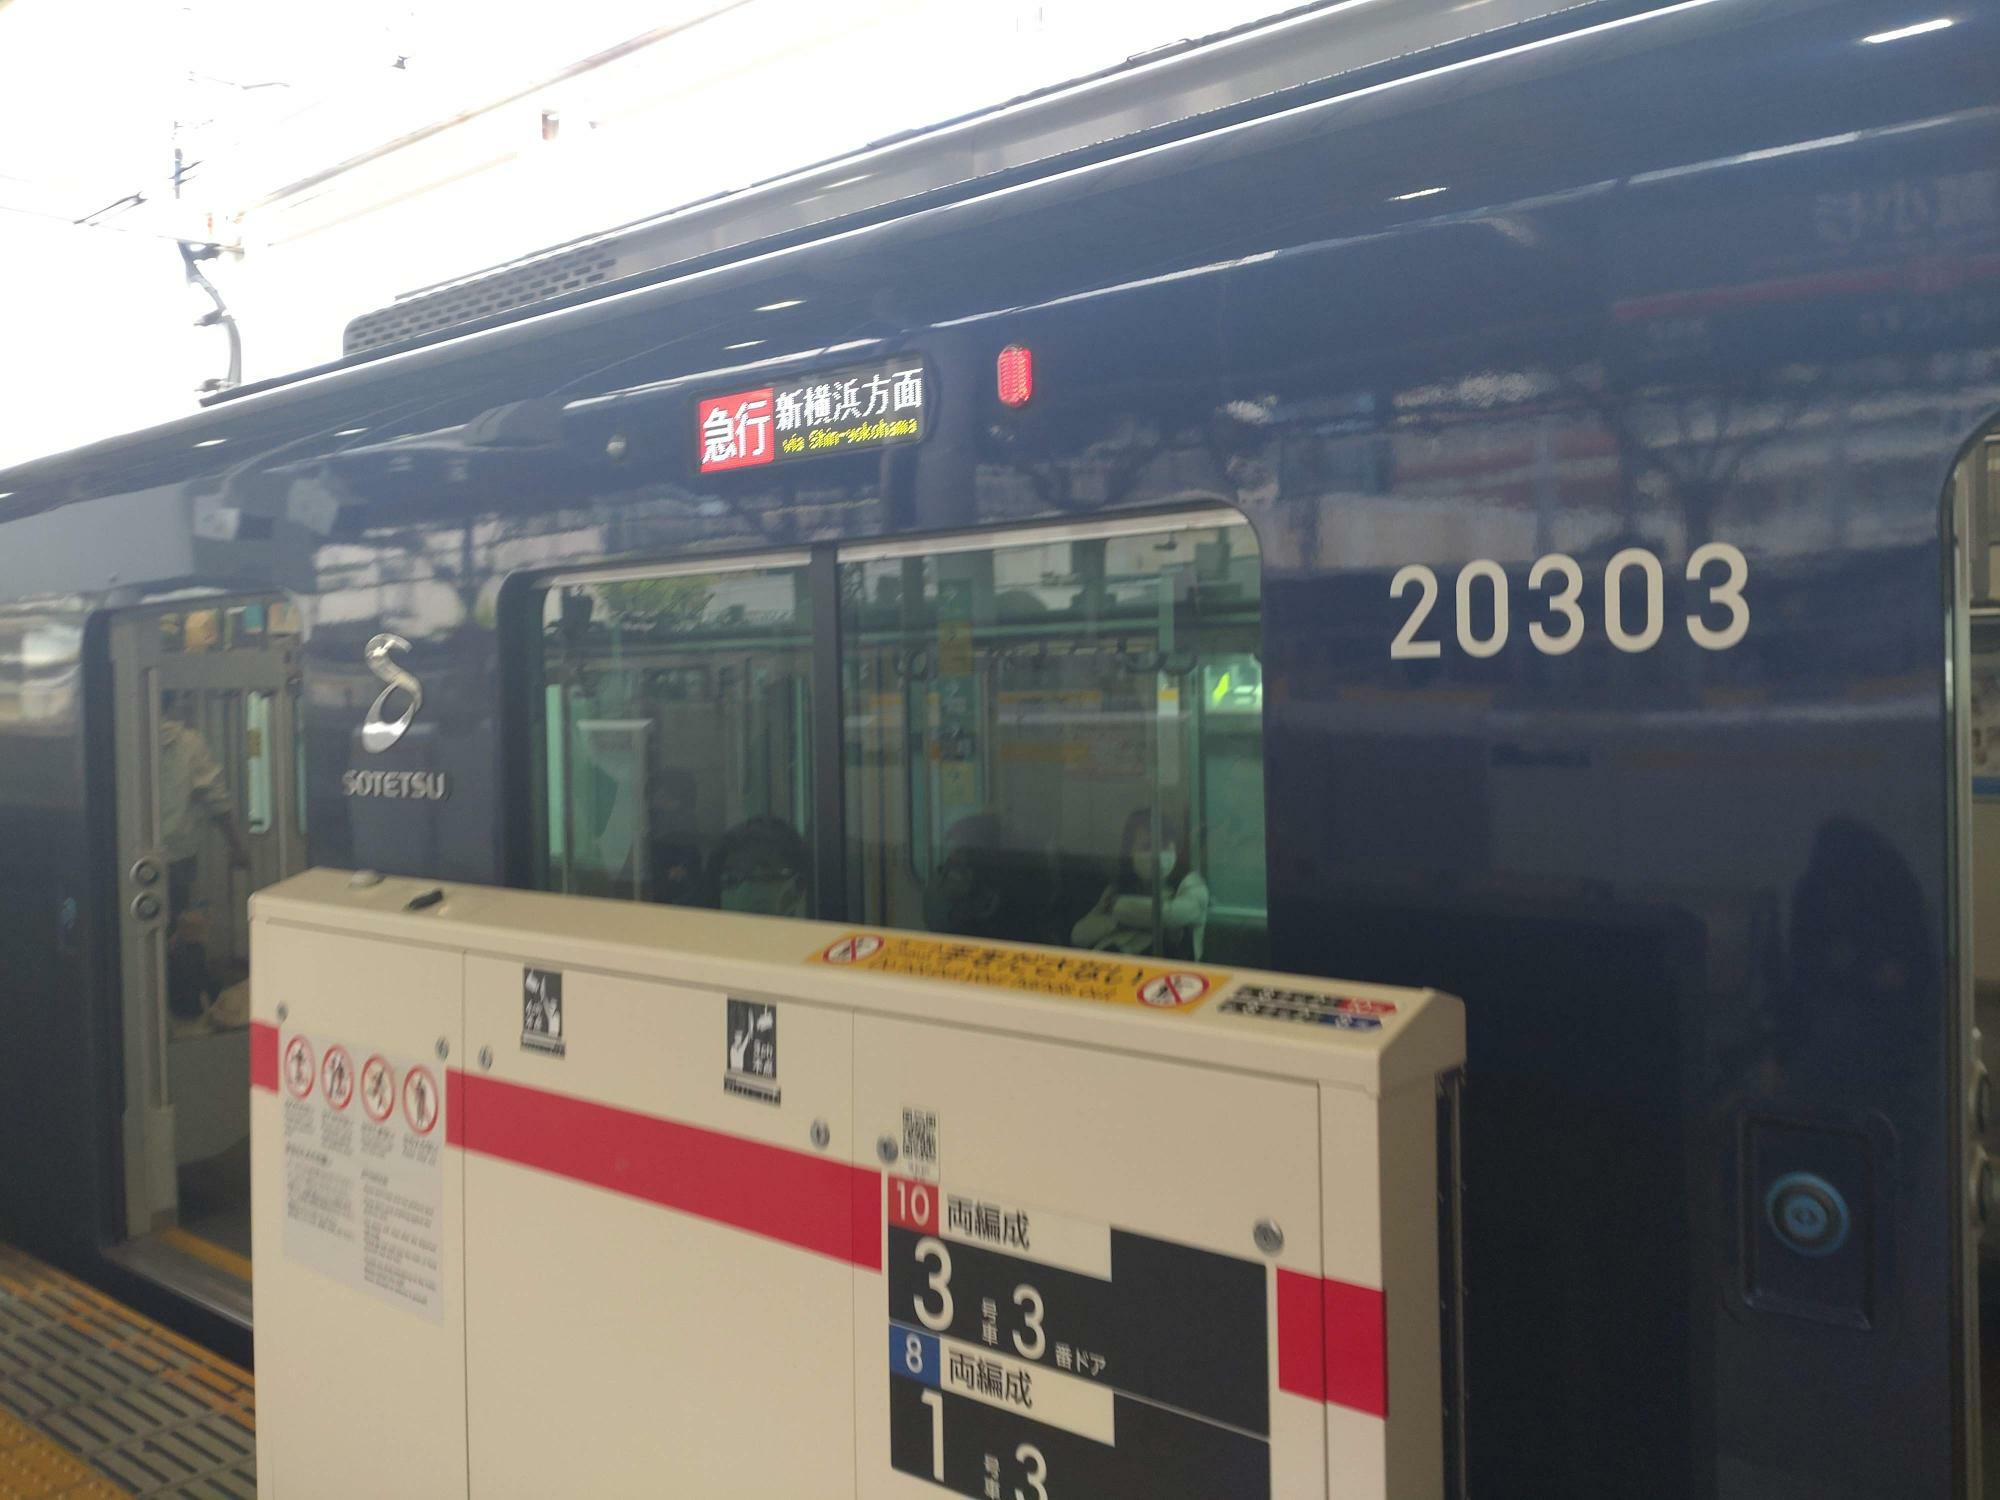 電車に「新横浜方面」と書いてあり安心